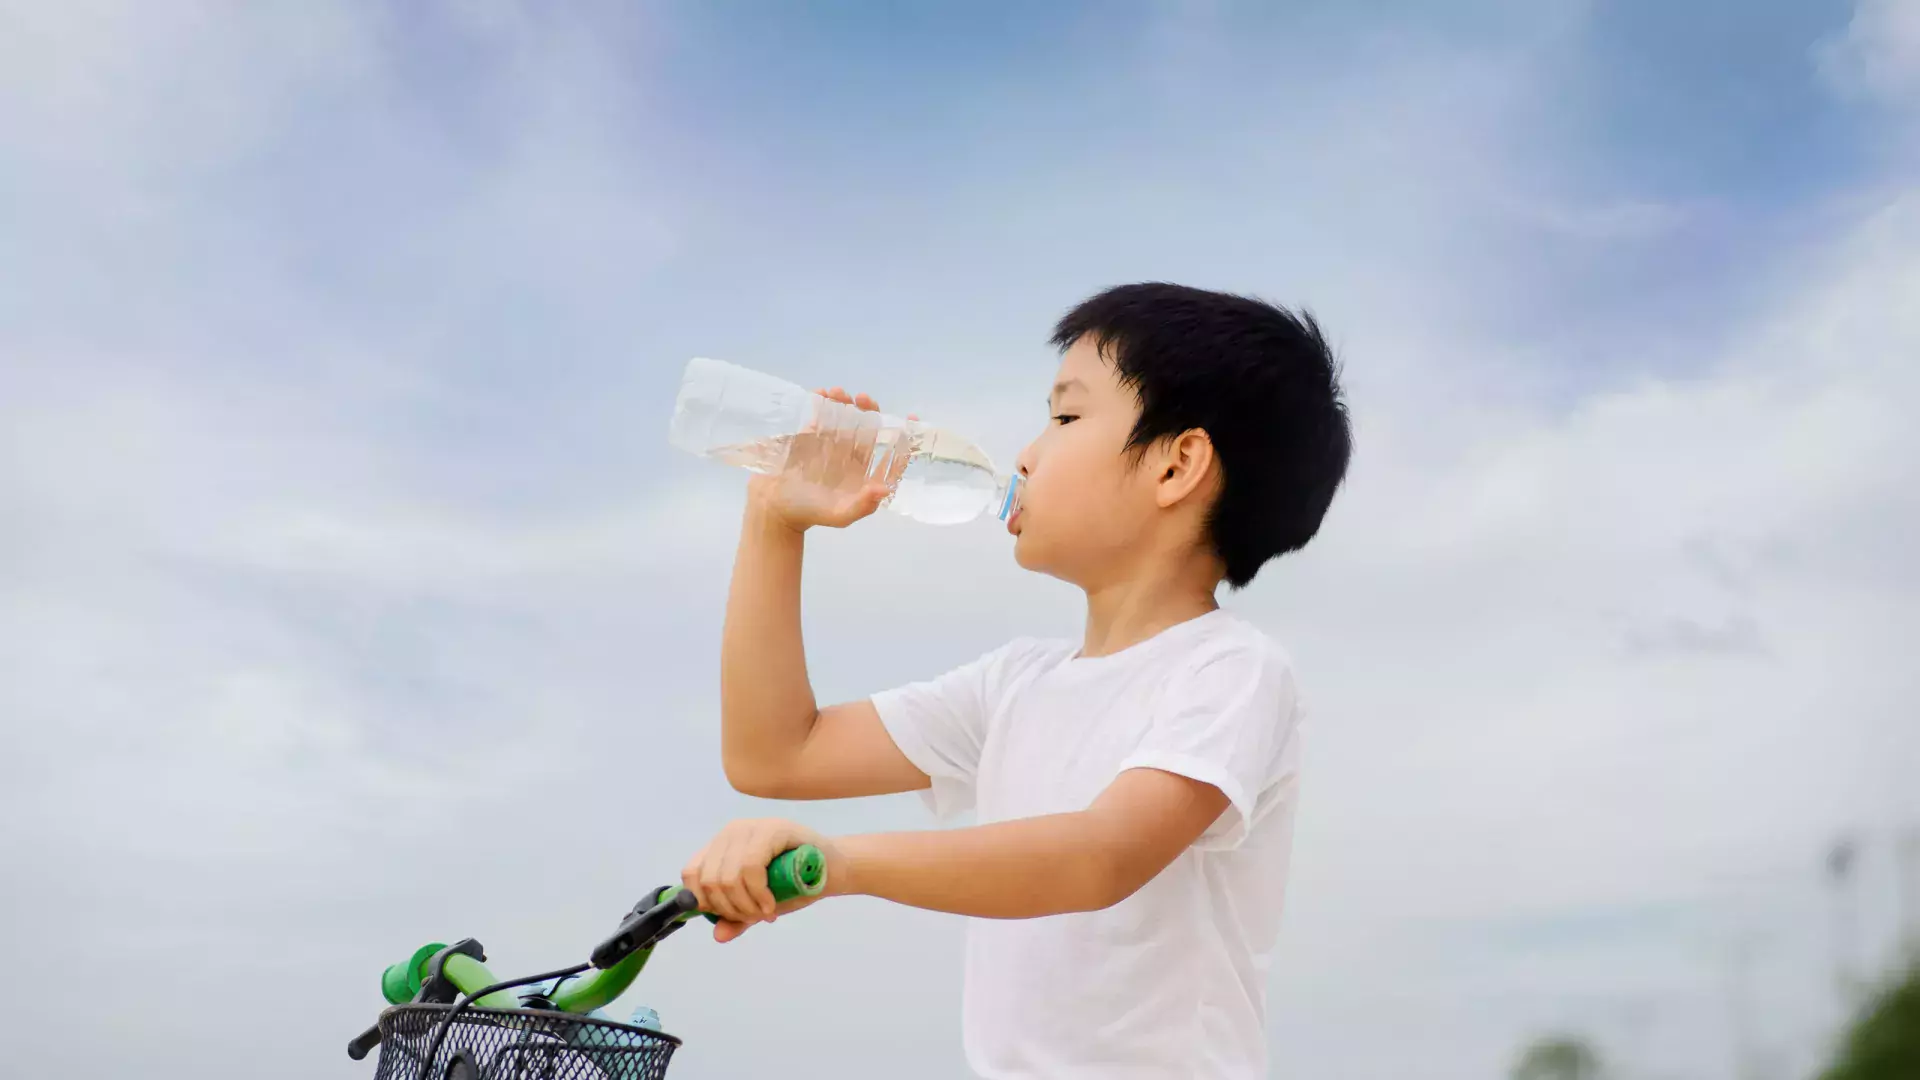 Little guy drinking water in a bottle